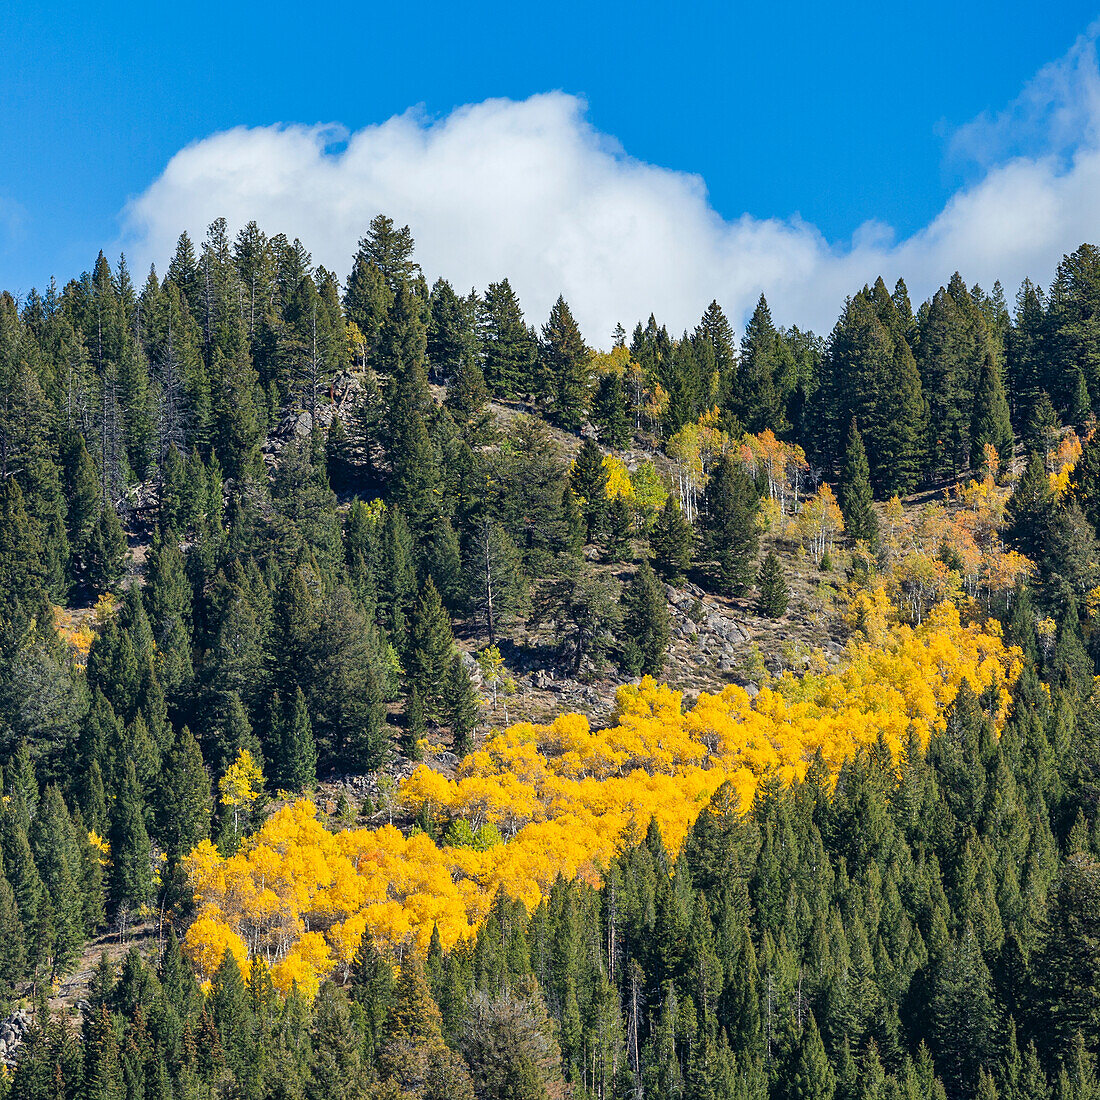 USA, Idaho, Stanley, Herbstfarben in Bäumen in den Bergen 